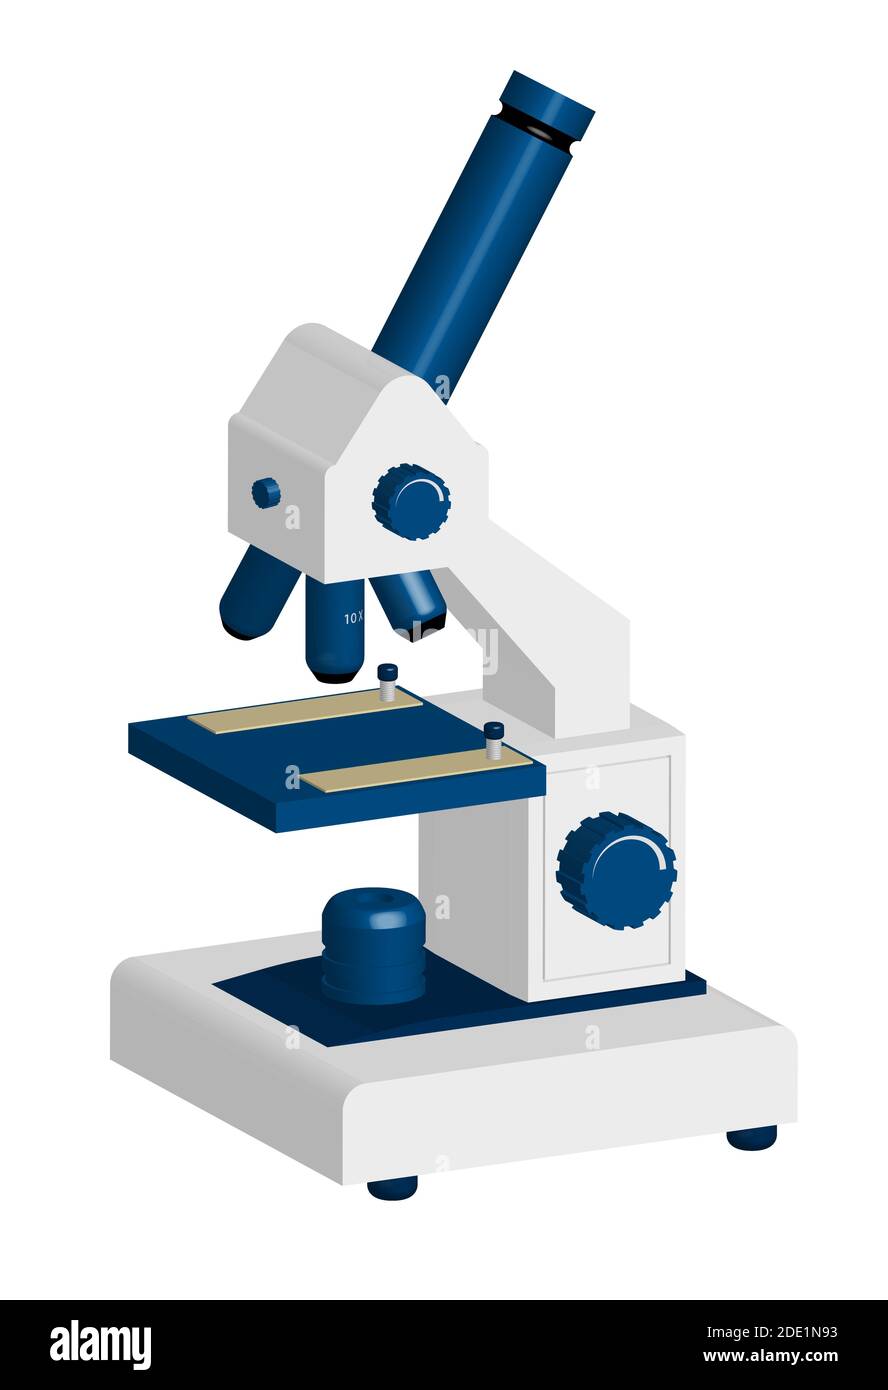 Microscope médical 3D réaliste. Équipement pour la recherche scientifique.  Élément de présentation. Vecteur isolé sur fond blanc Image Vectorielle  Stock - Alamy